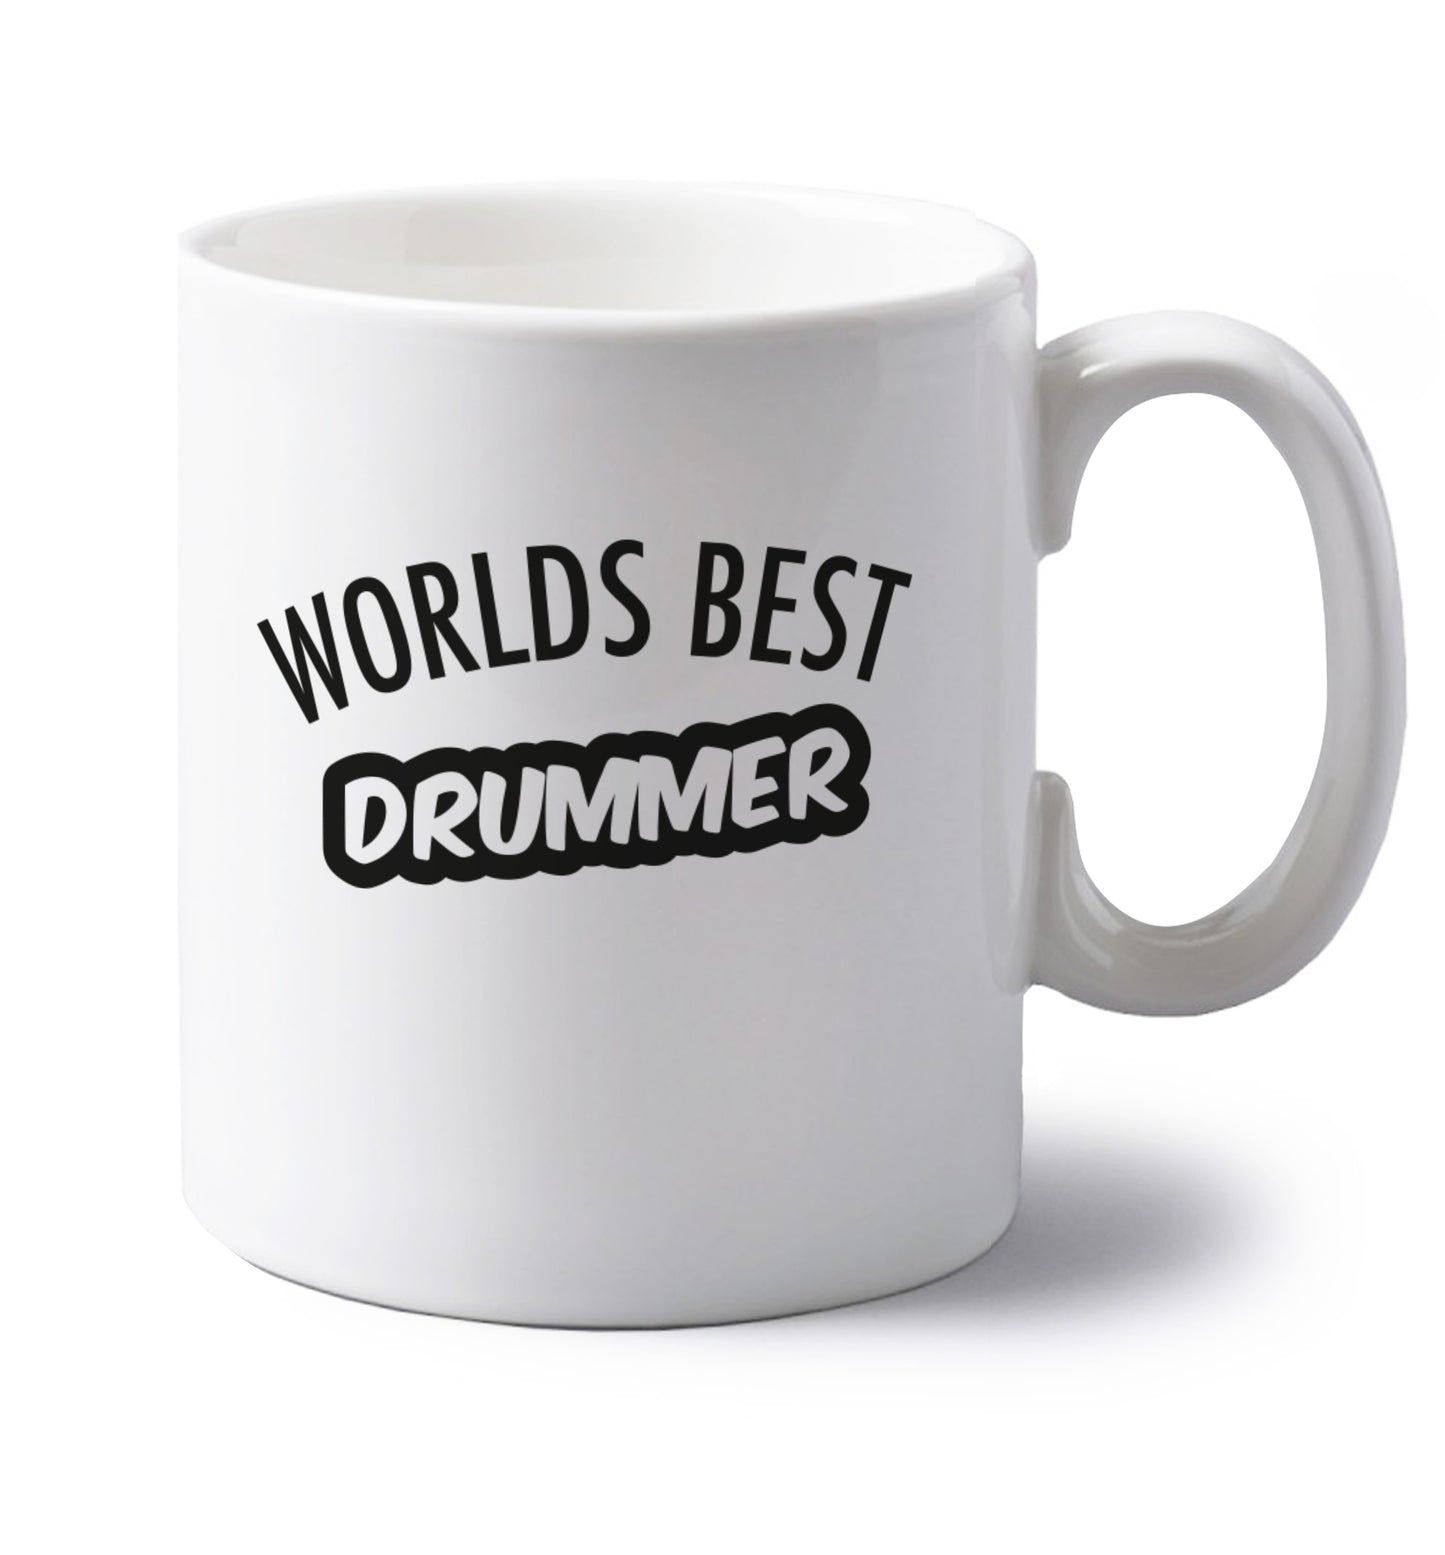 Worlds best drummer left handed white ceramic mug 